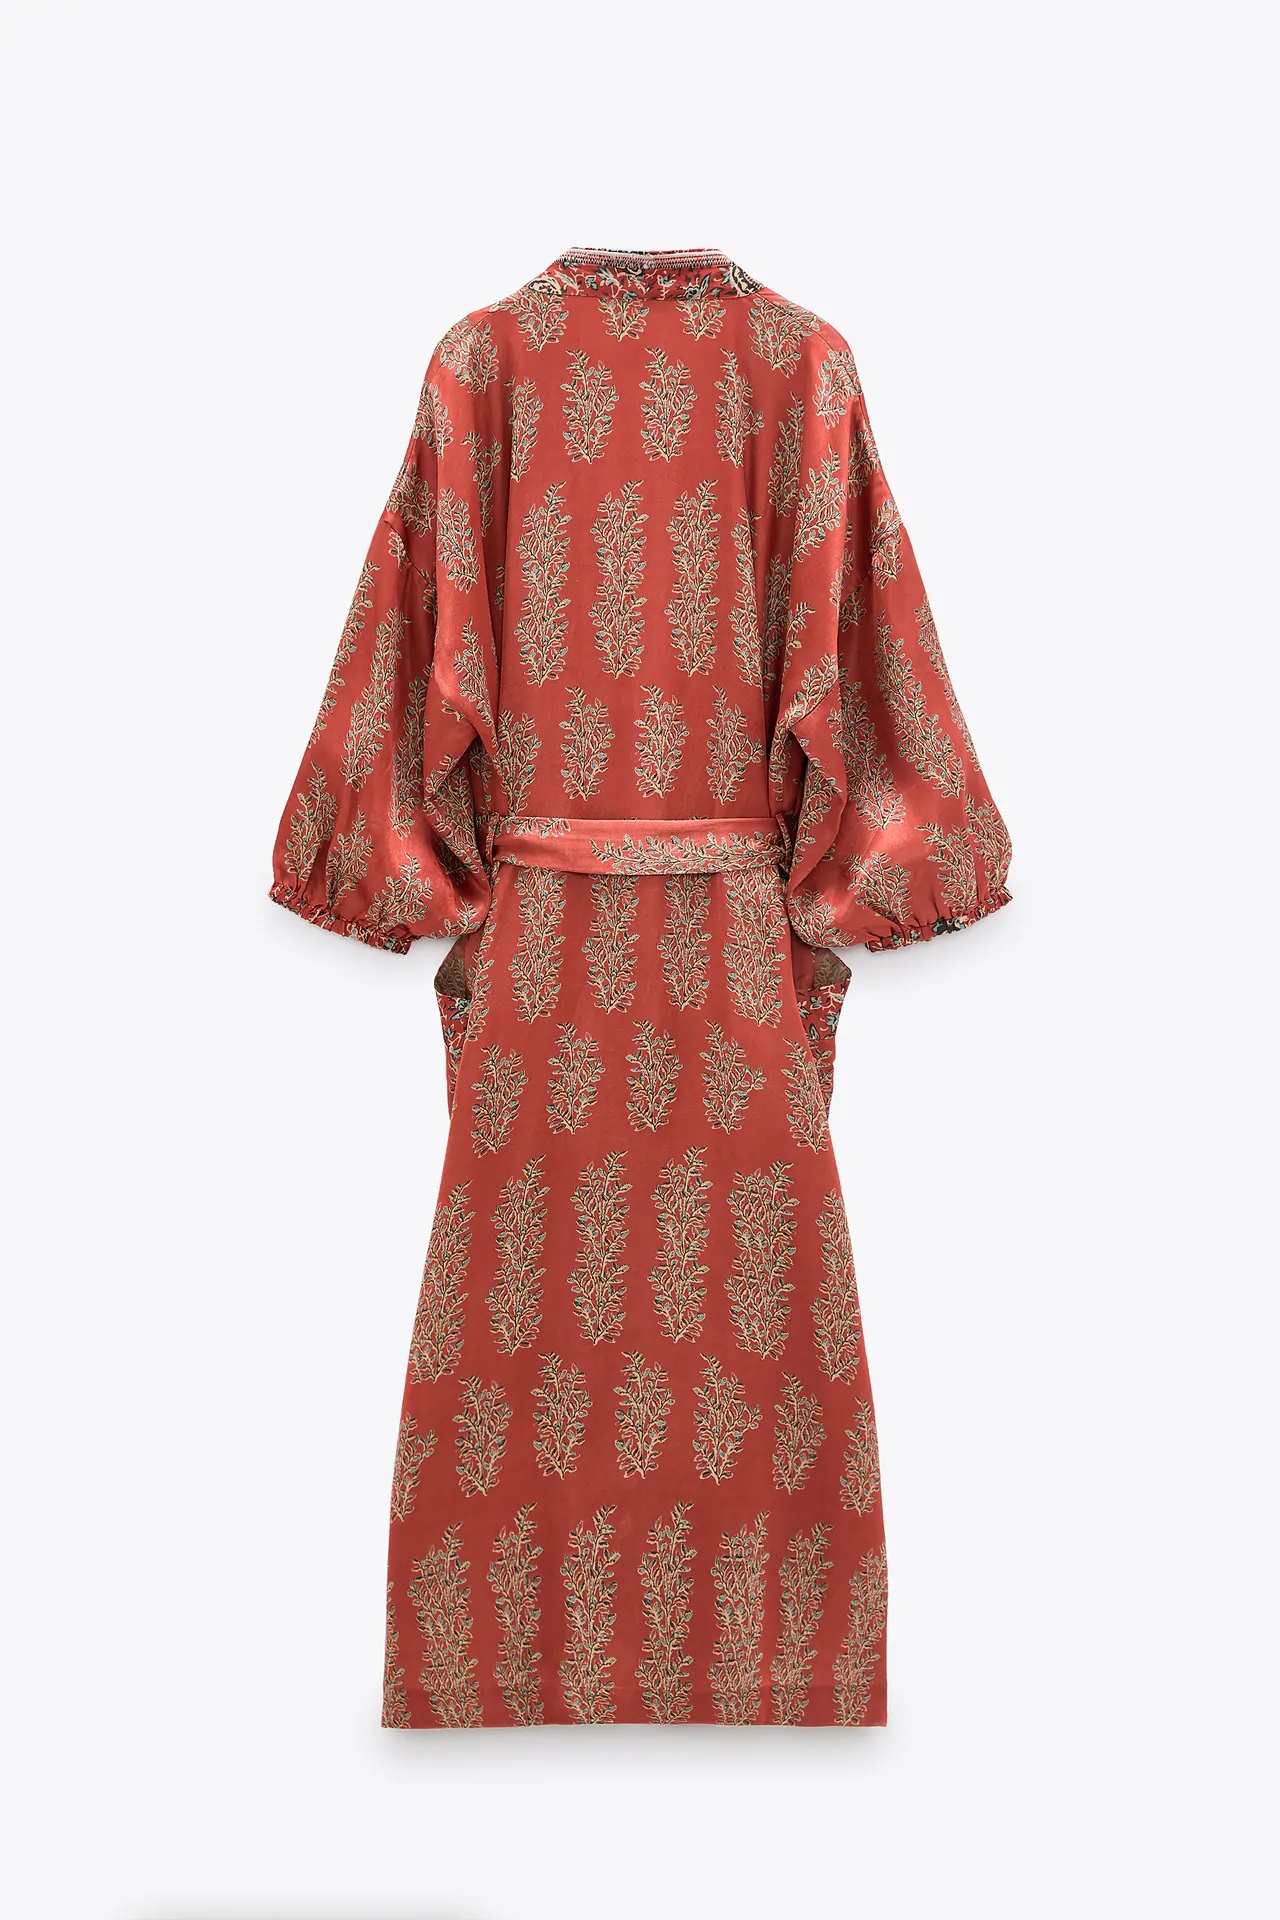 Zara tiene un kimono para llevar como vestido, túnica o chaqueta digno de una geisha